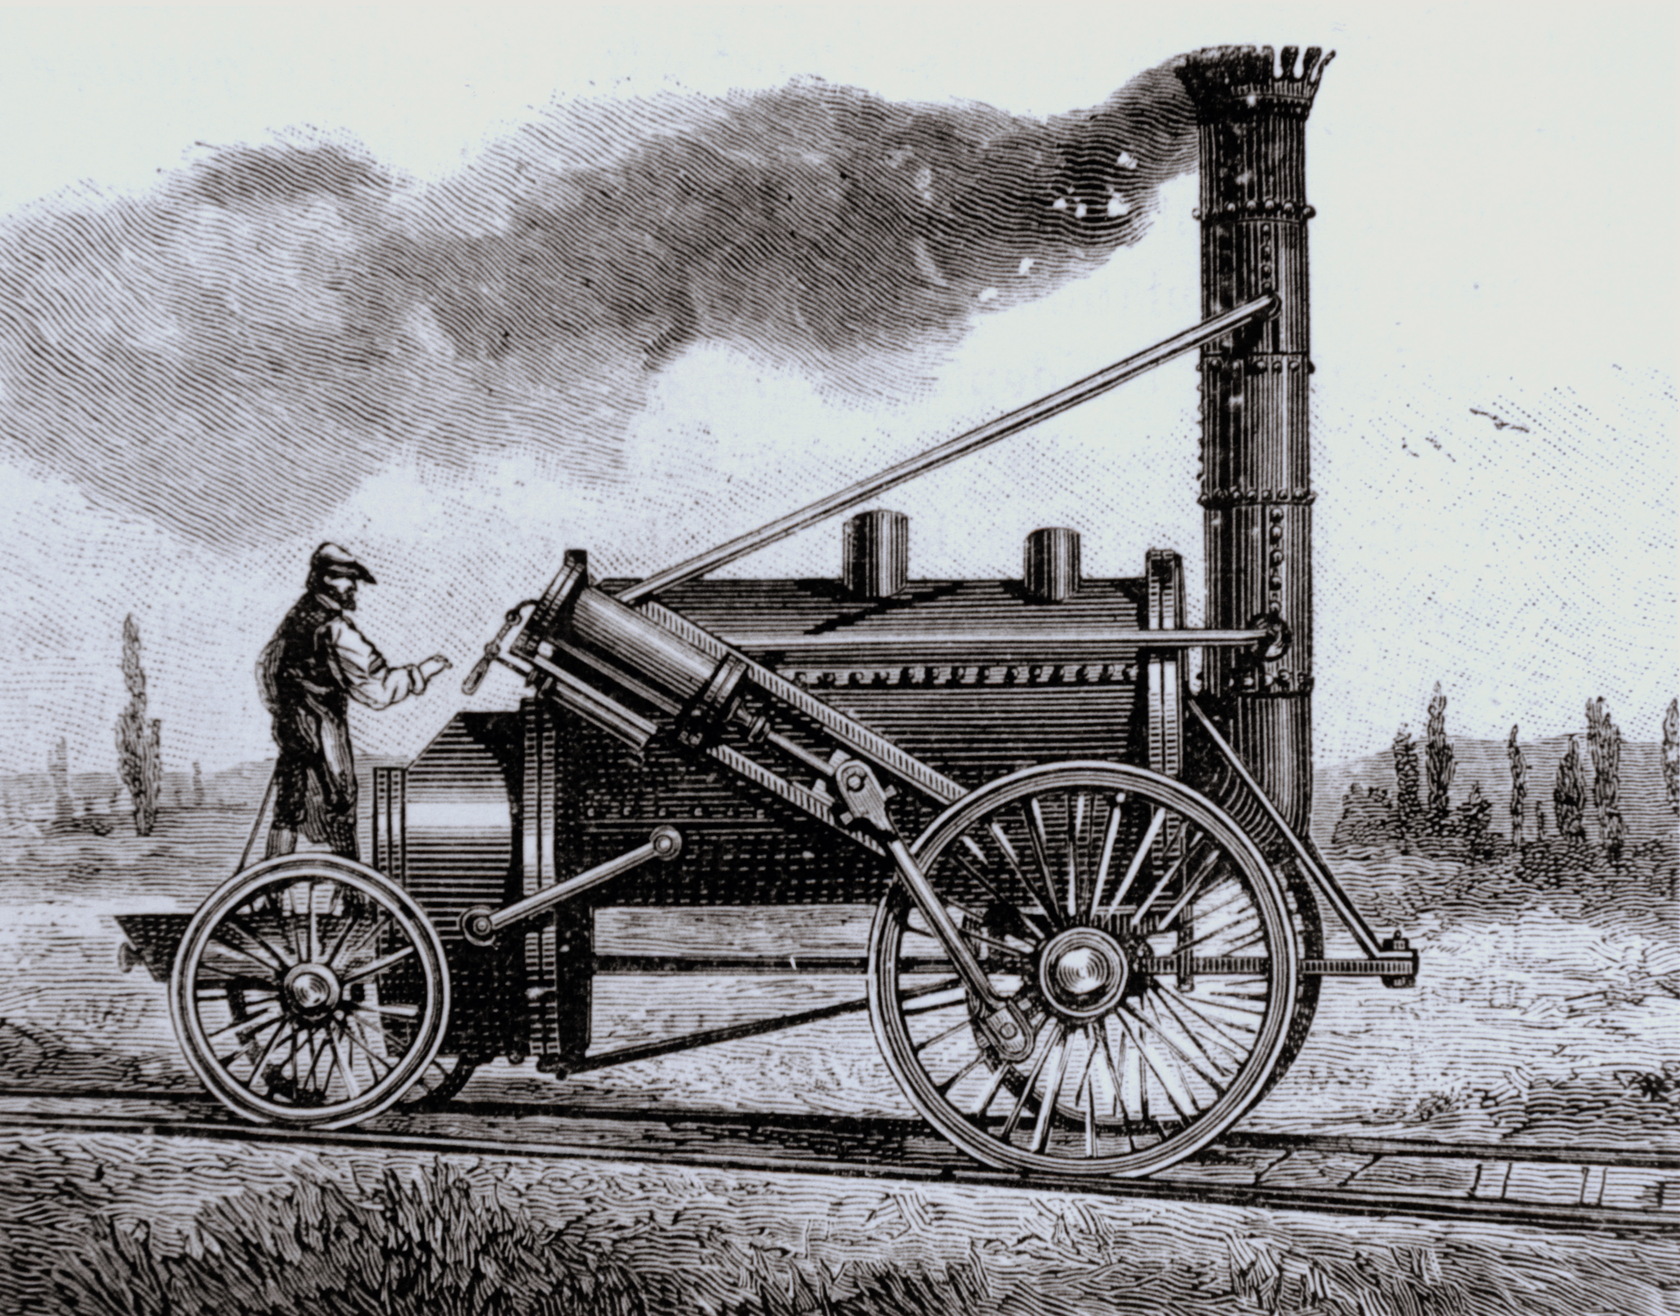 Первая технологическая революция. 19 Век Англия Промышленная революция паровые машины. Технические изобретения промышленной революции 19 века. Промышленная революция 18.век Англия. Паровоз ракета Стефенсона.